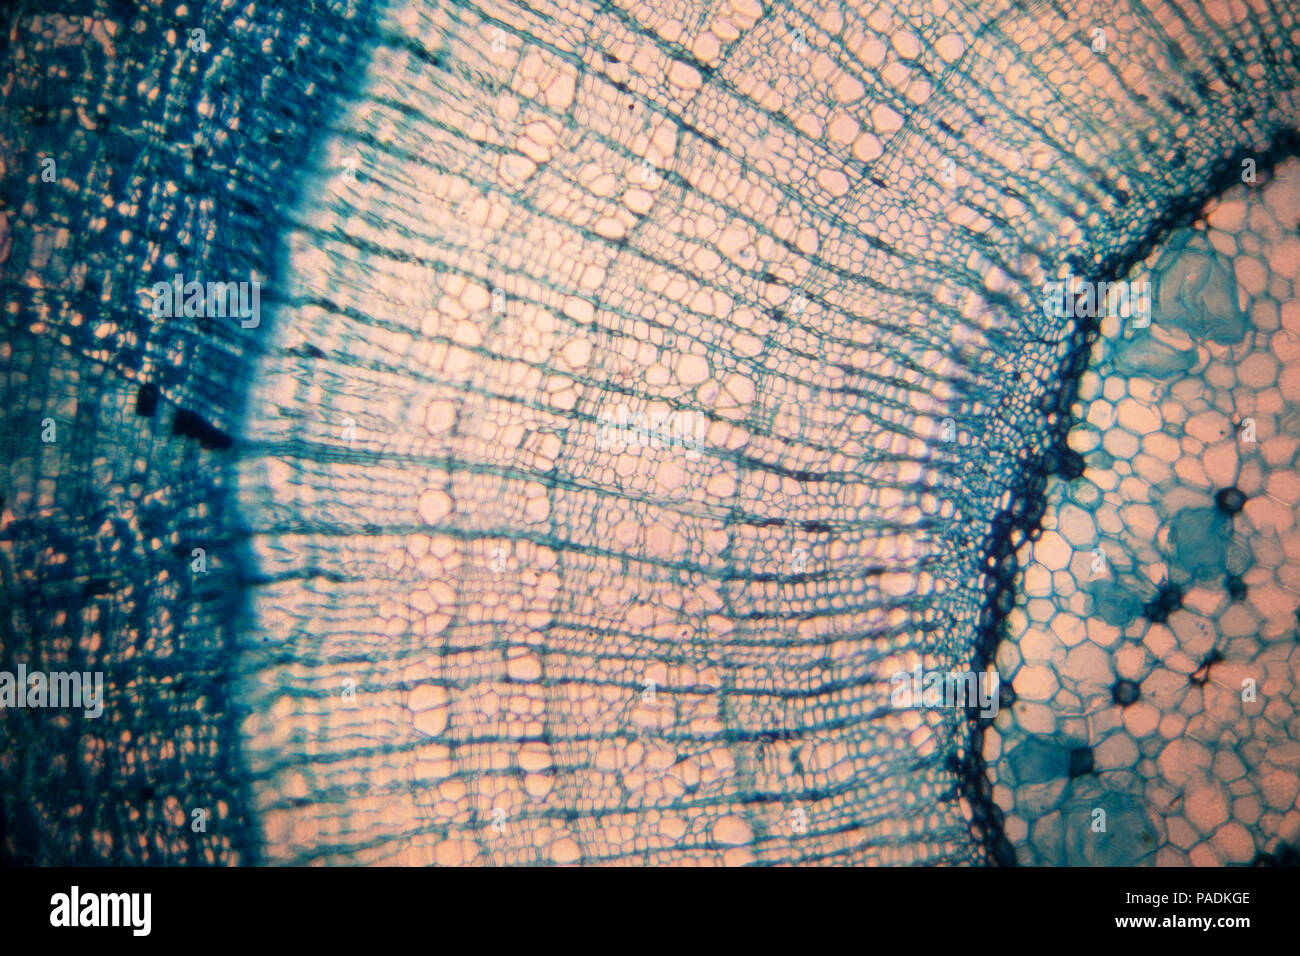 Cellule d'un organisme vivant dans le microscope Banque D'Images